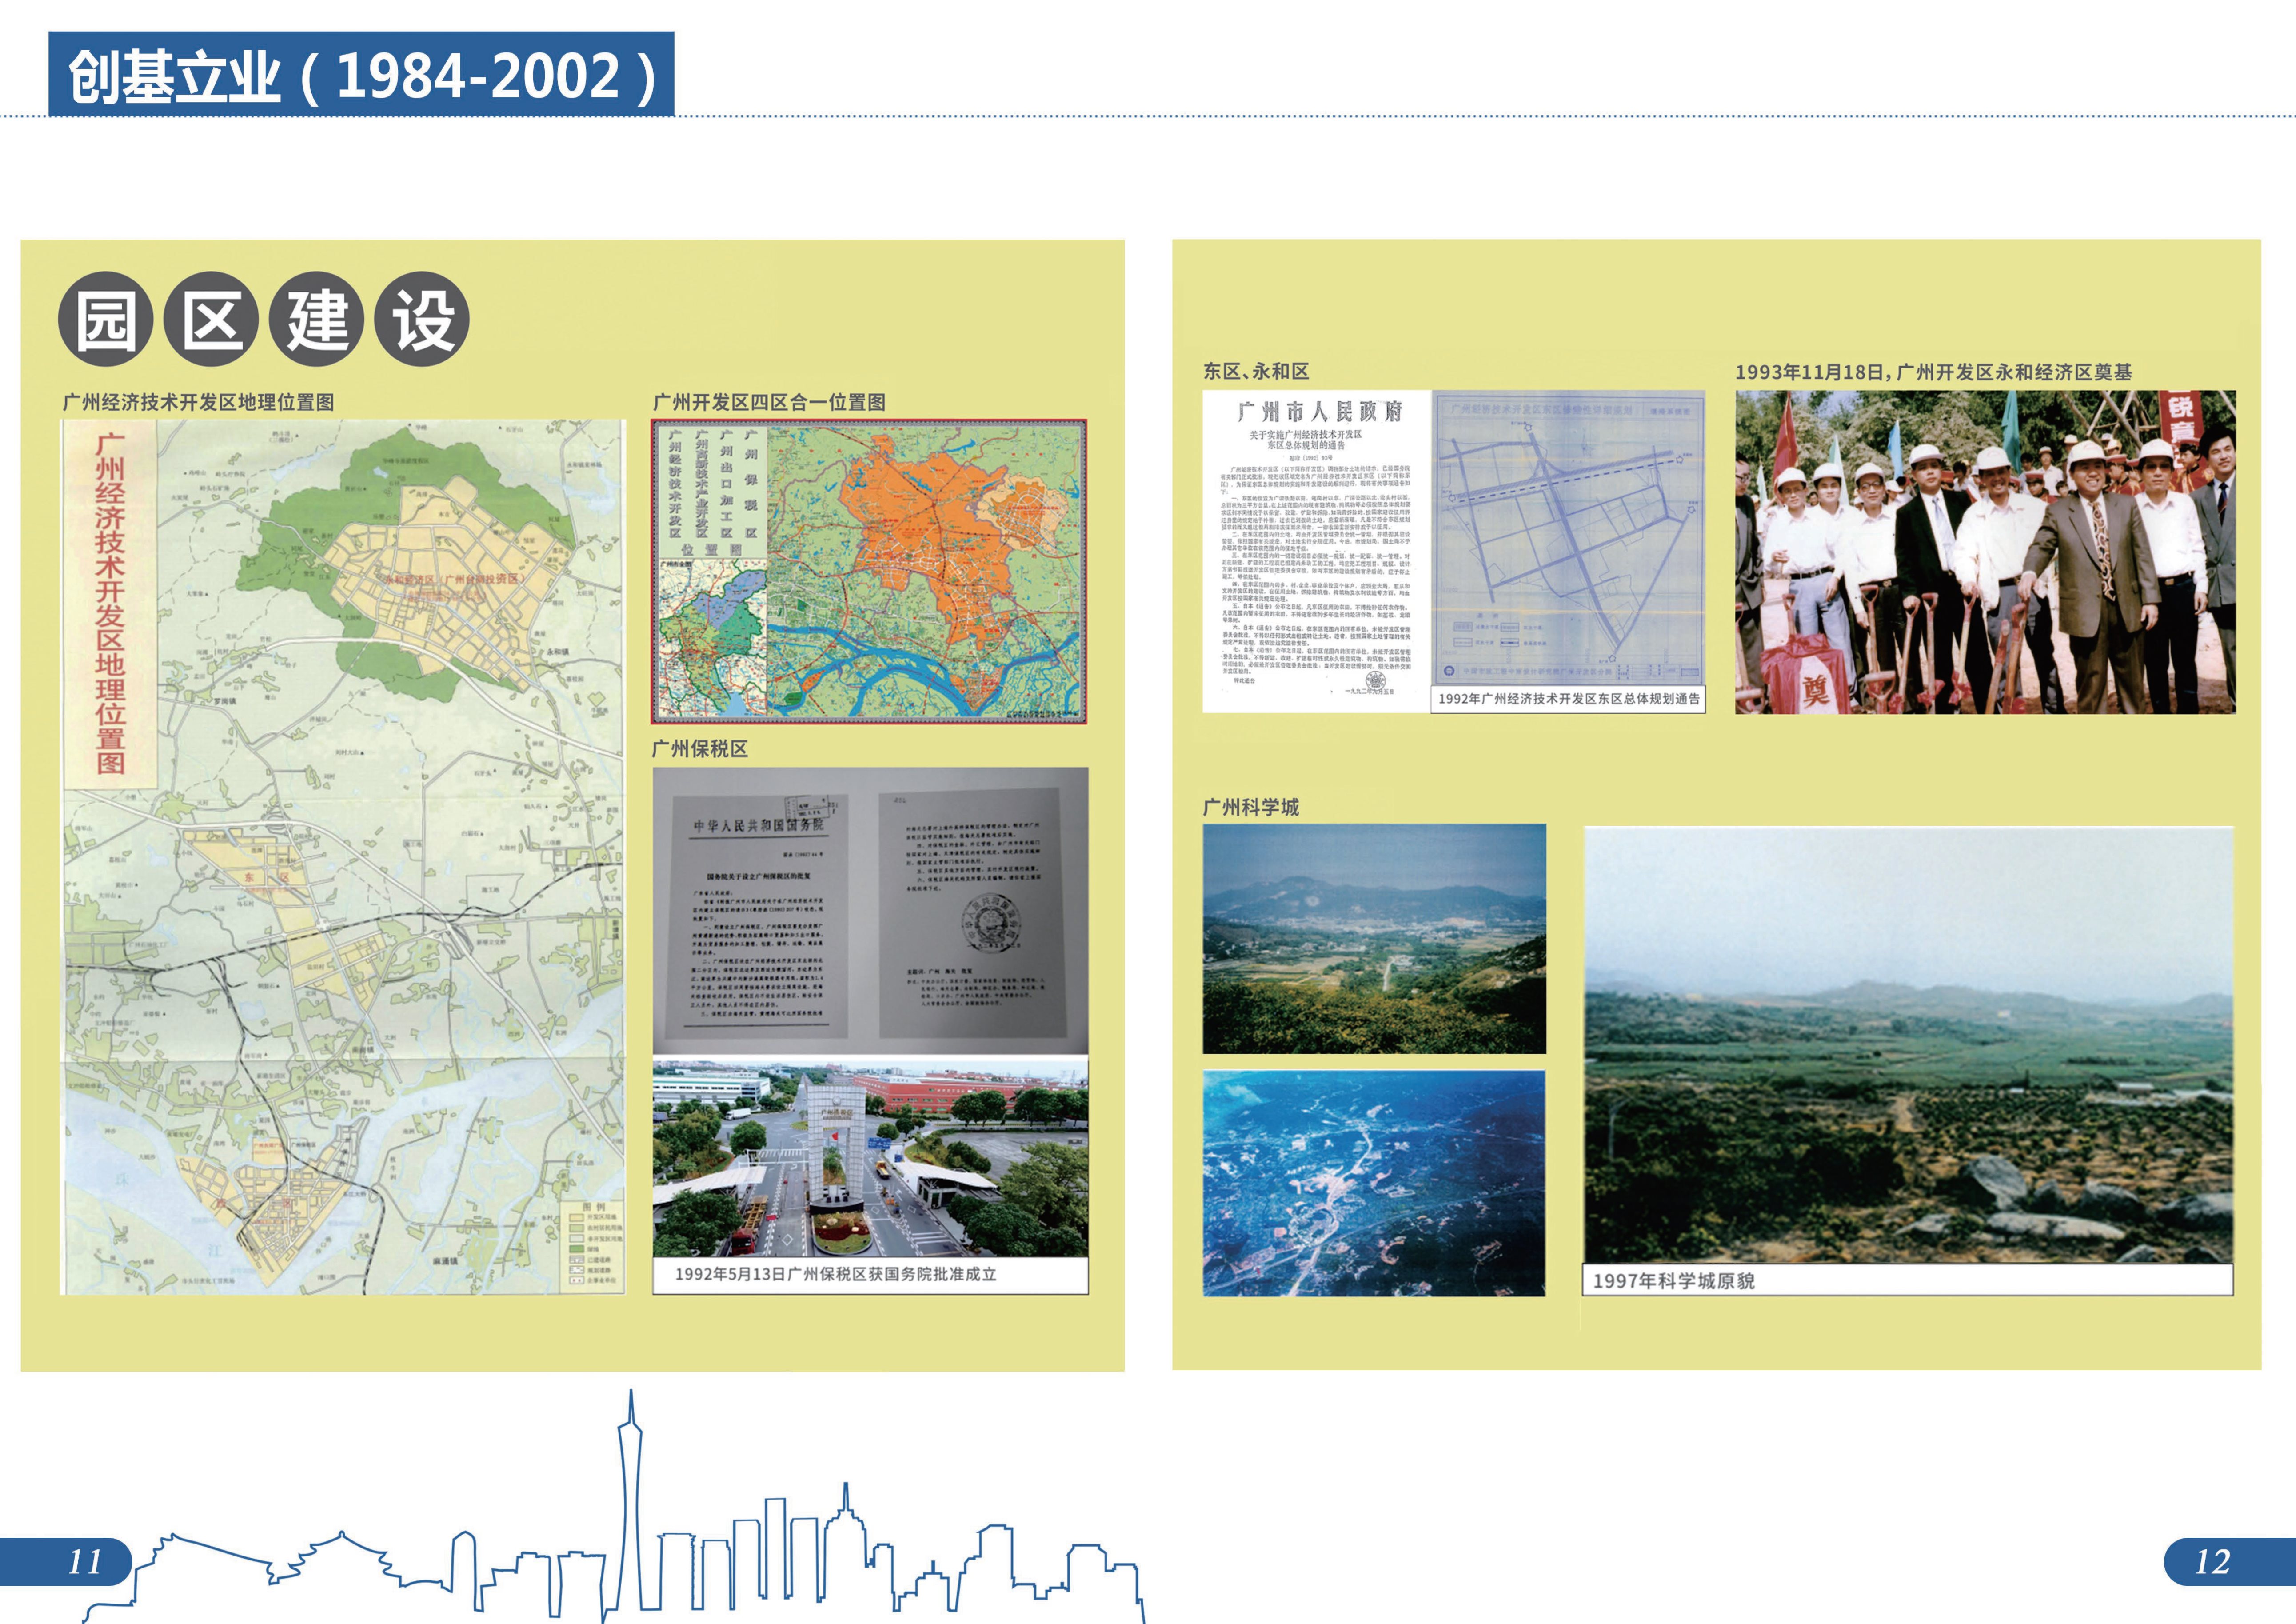 城市建设档案图片展图册成品20230807-8.jpg